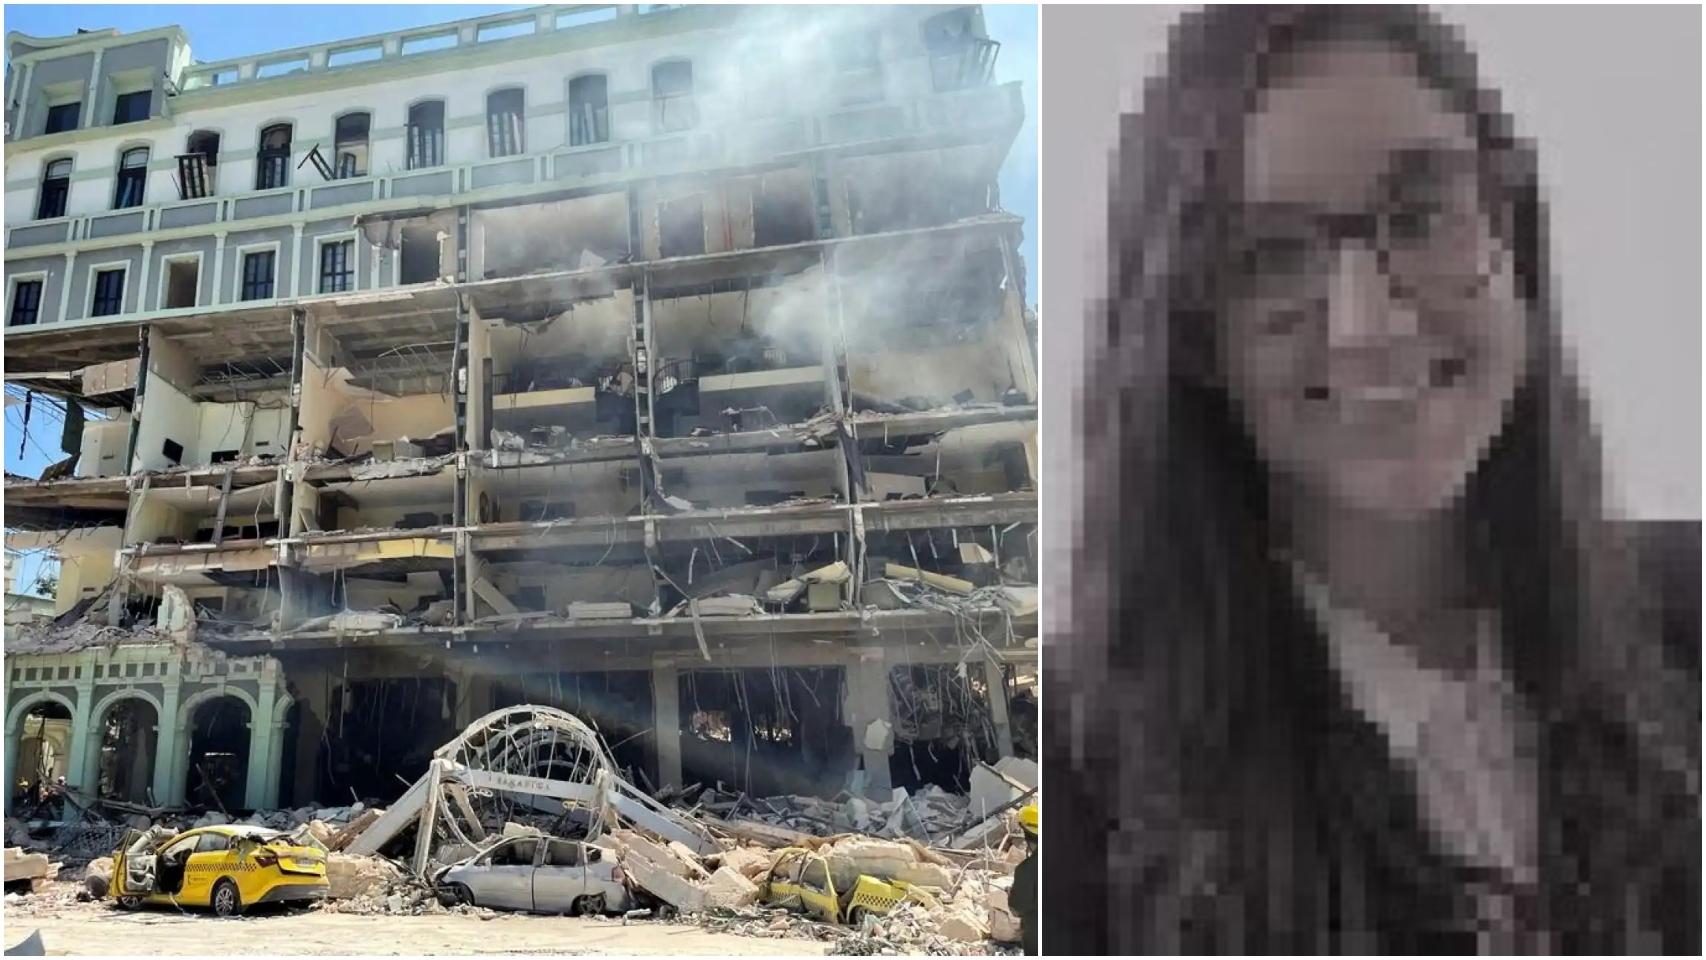 Cristina, la trabajadora de ABANCA muerta en la explosión de La Habana: el viaje fatal con su novio